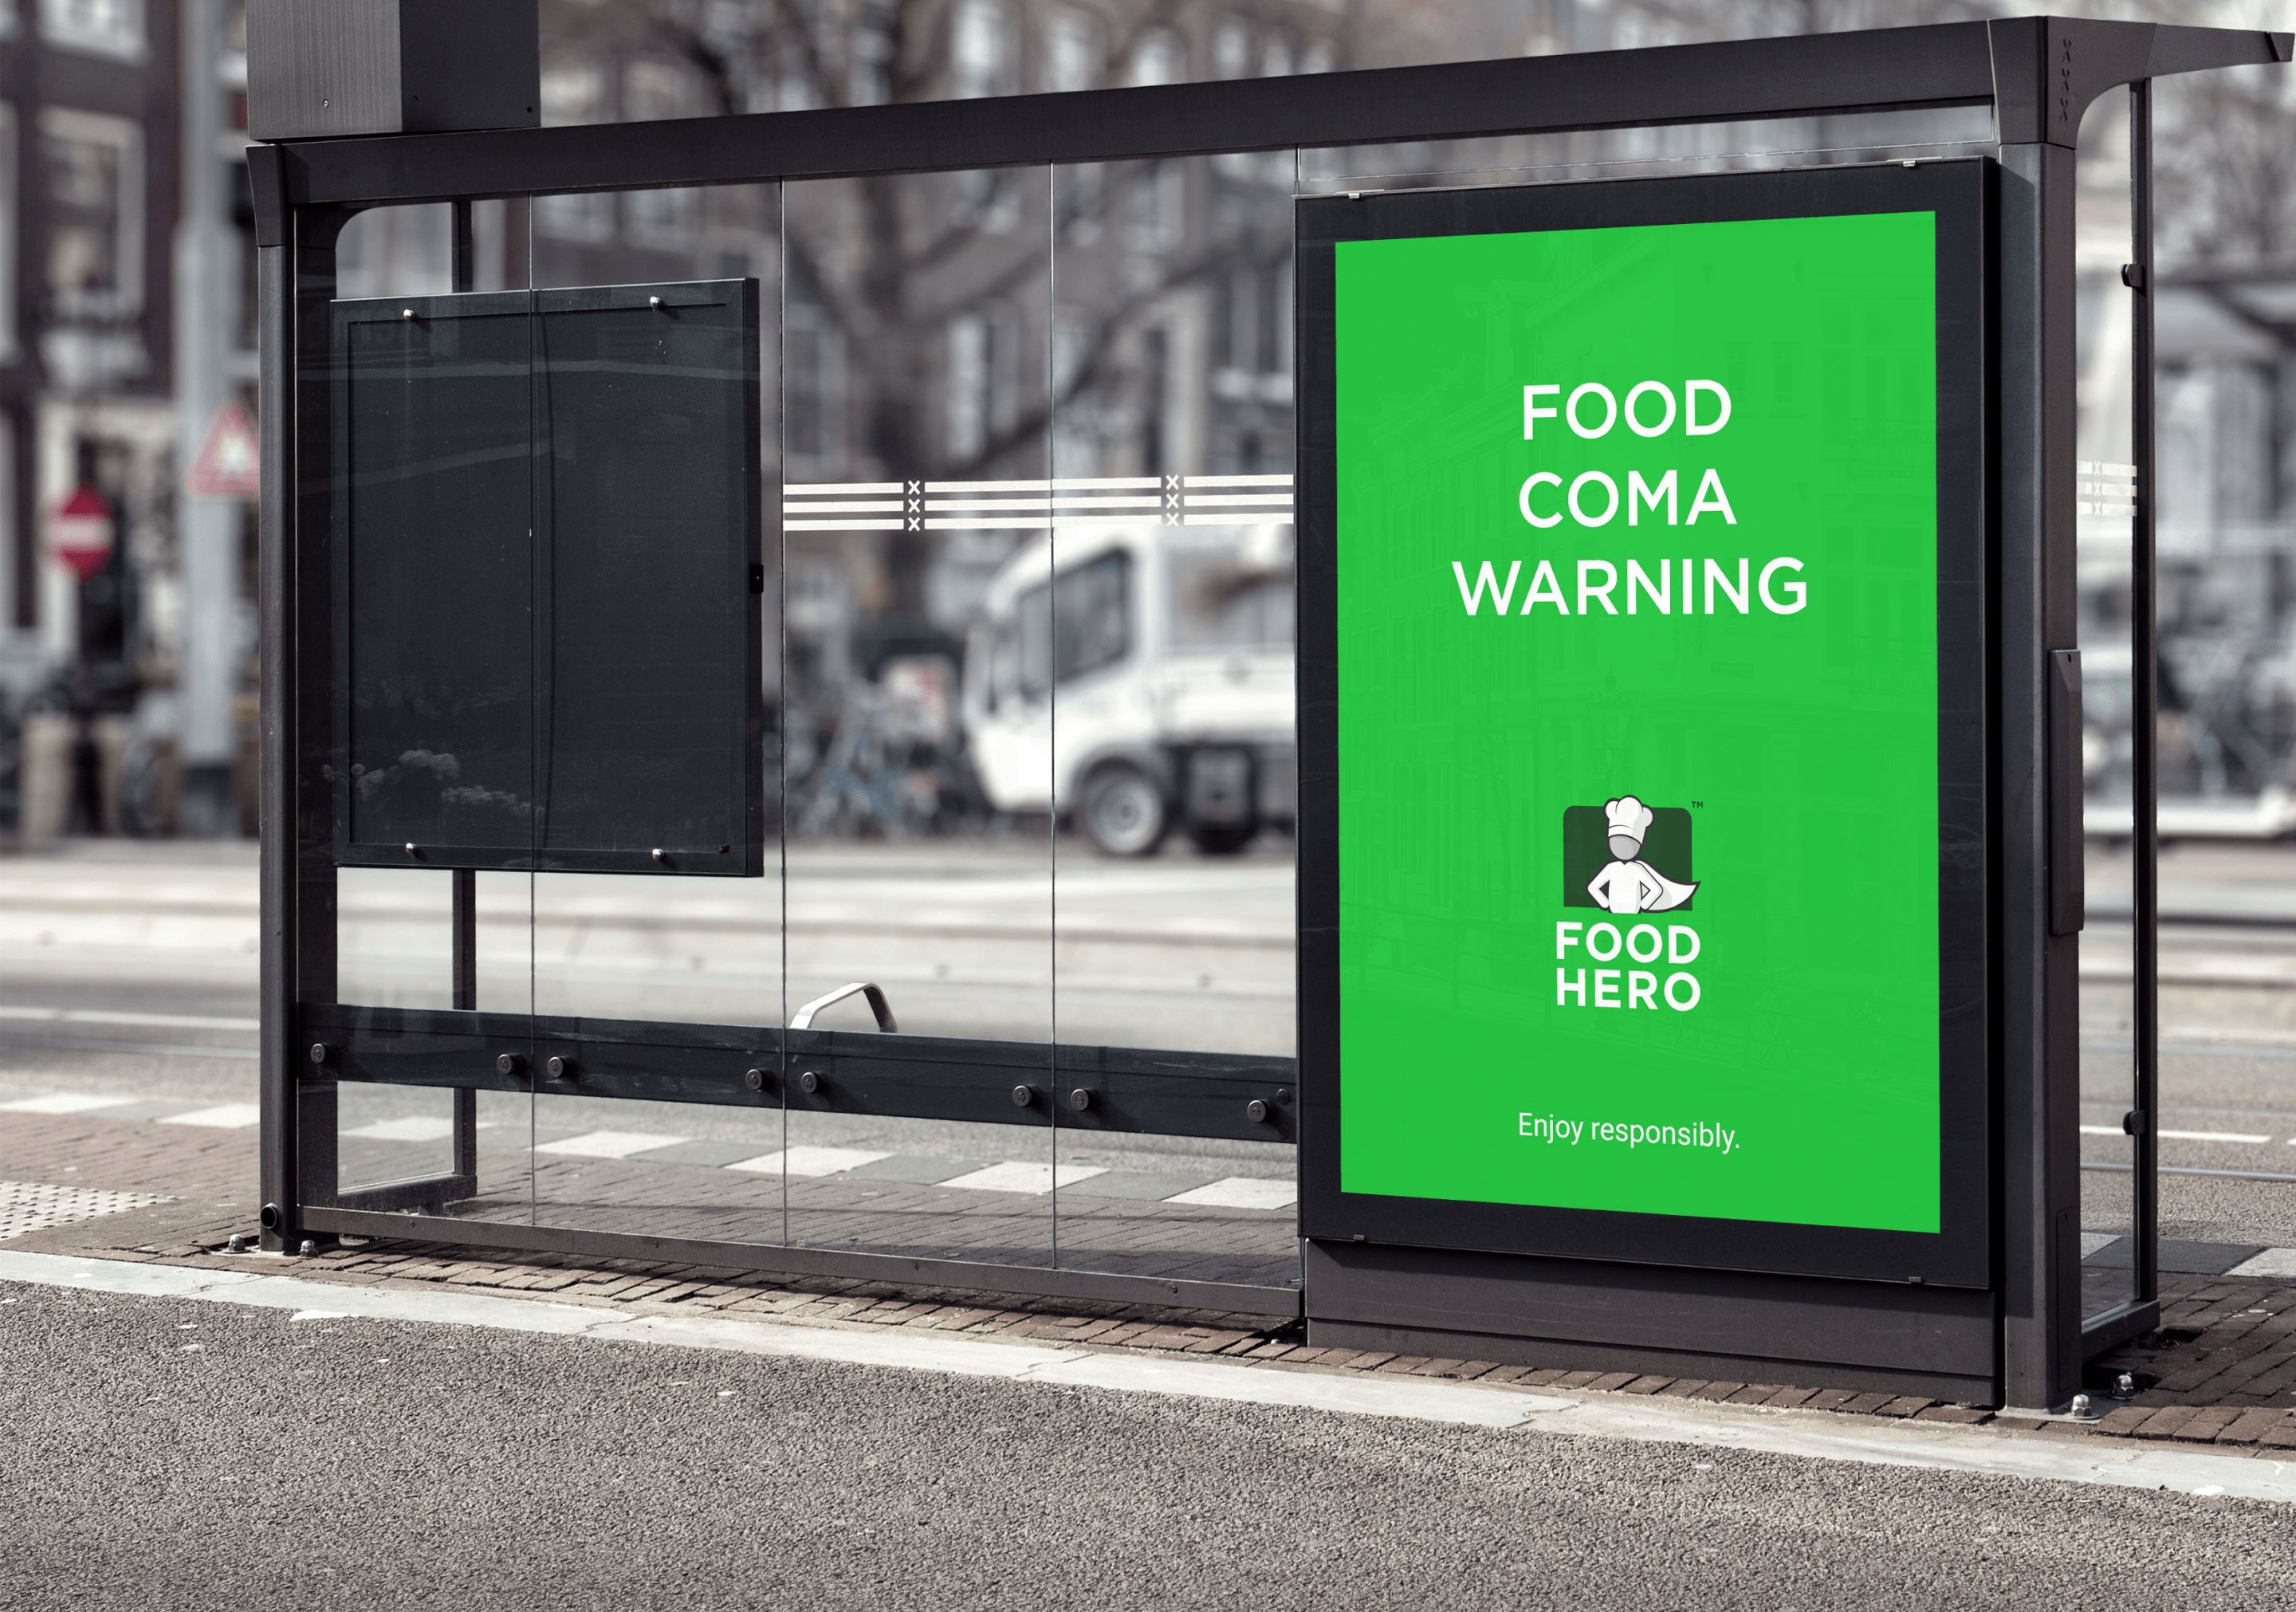 FoodHero advert displayed on a bus stop billboard